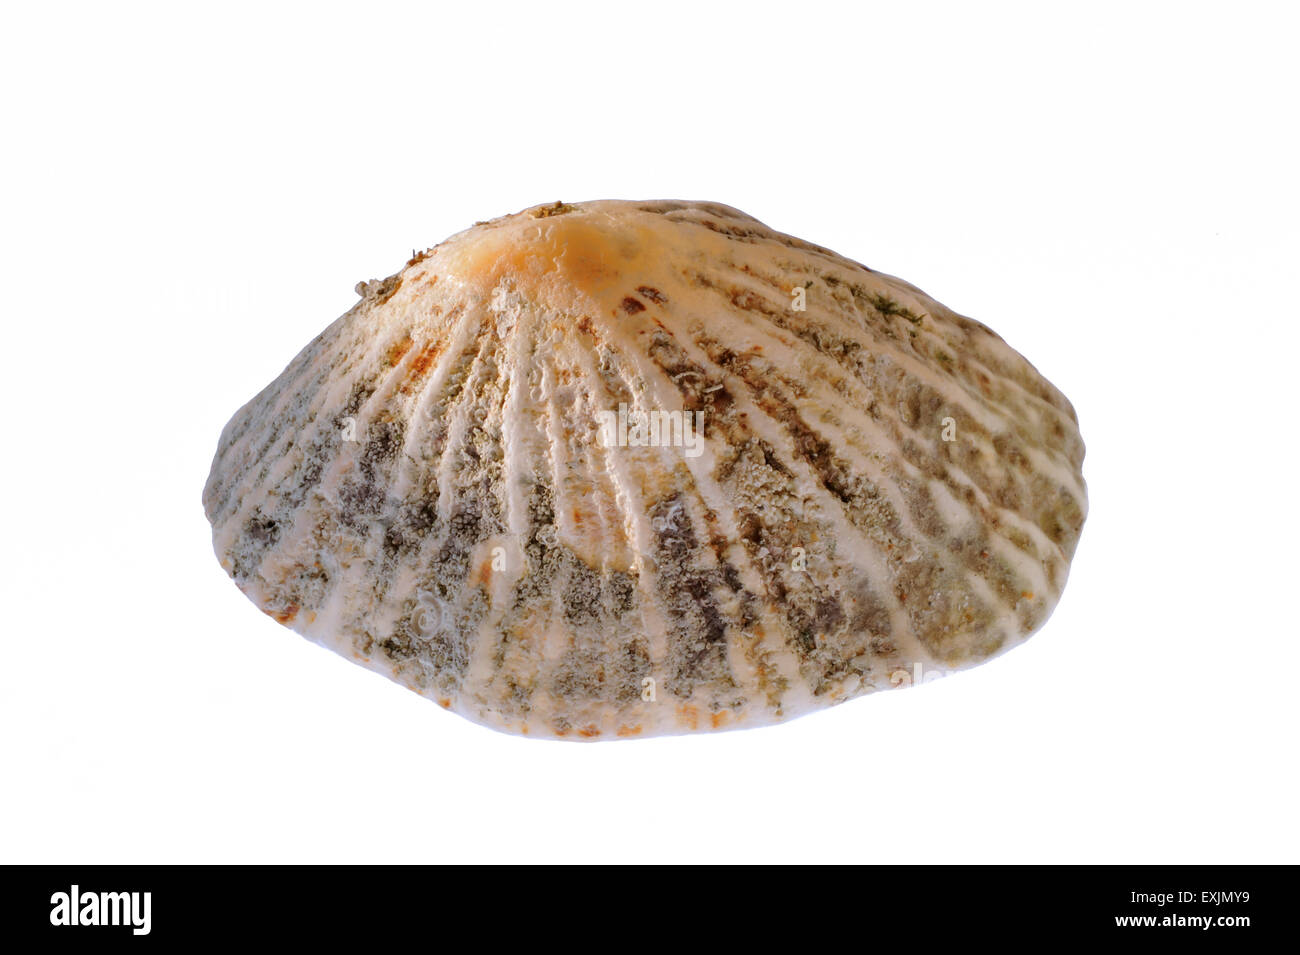 Limpet comune / common European limpet (Patella vulgata) shell su sfondo bianco Foto Stock